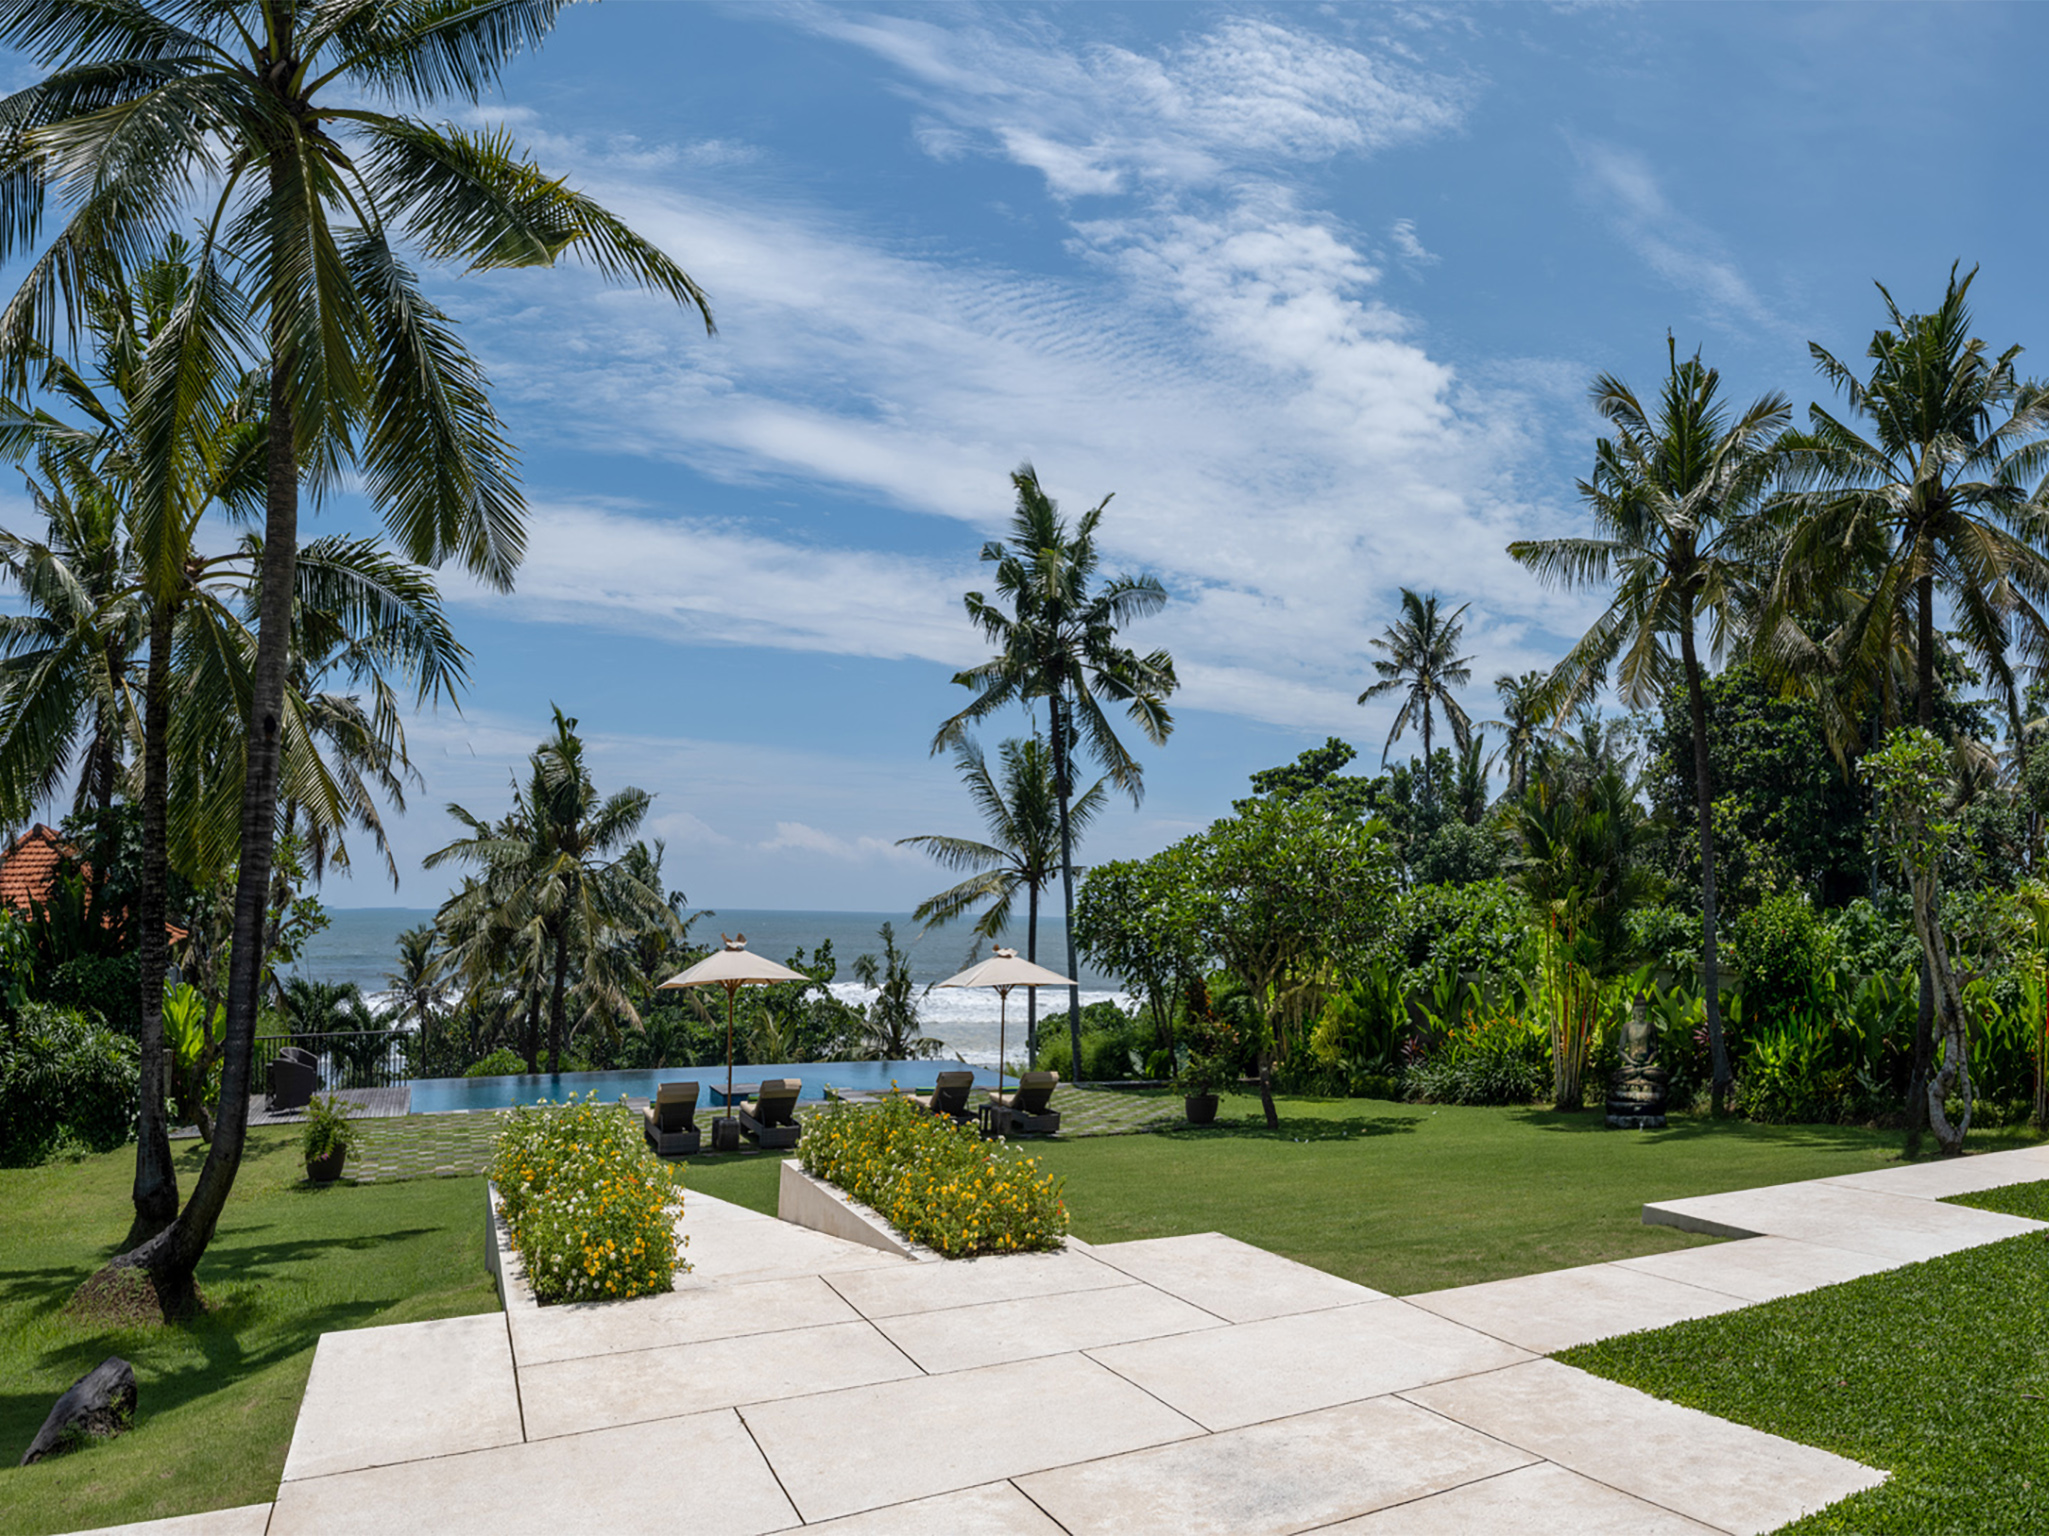 Villa Kailasha - View of pool and sea from the lawn - Villa Kailasha, Tabanan, Bali